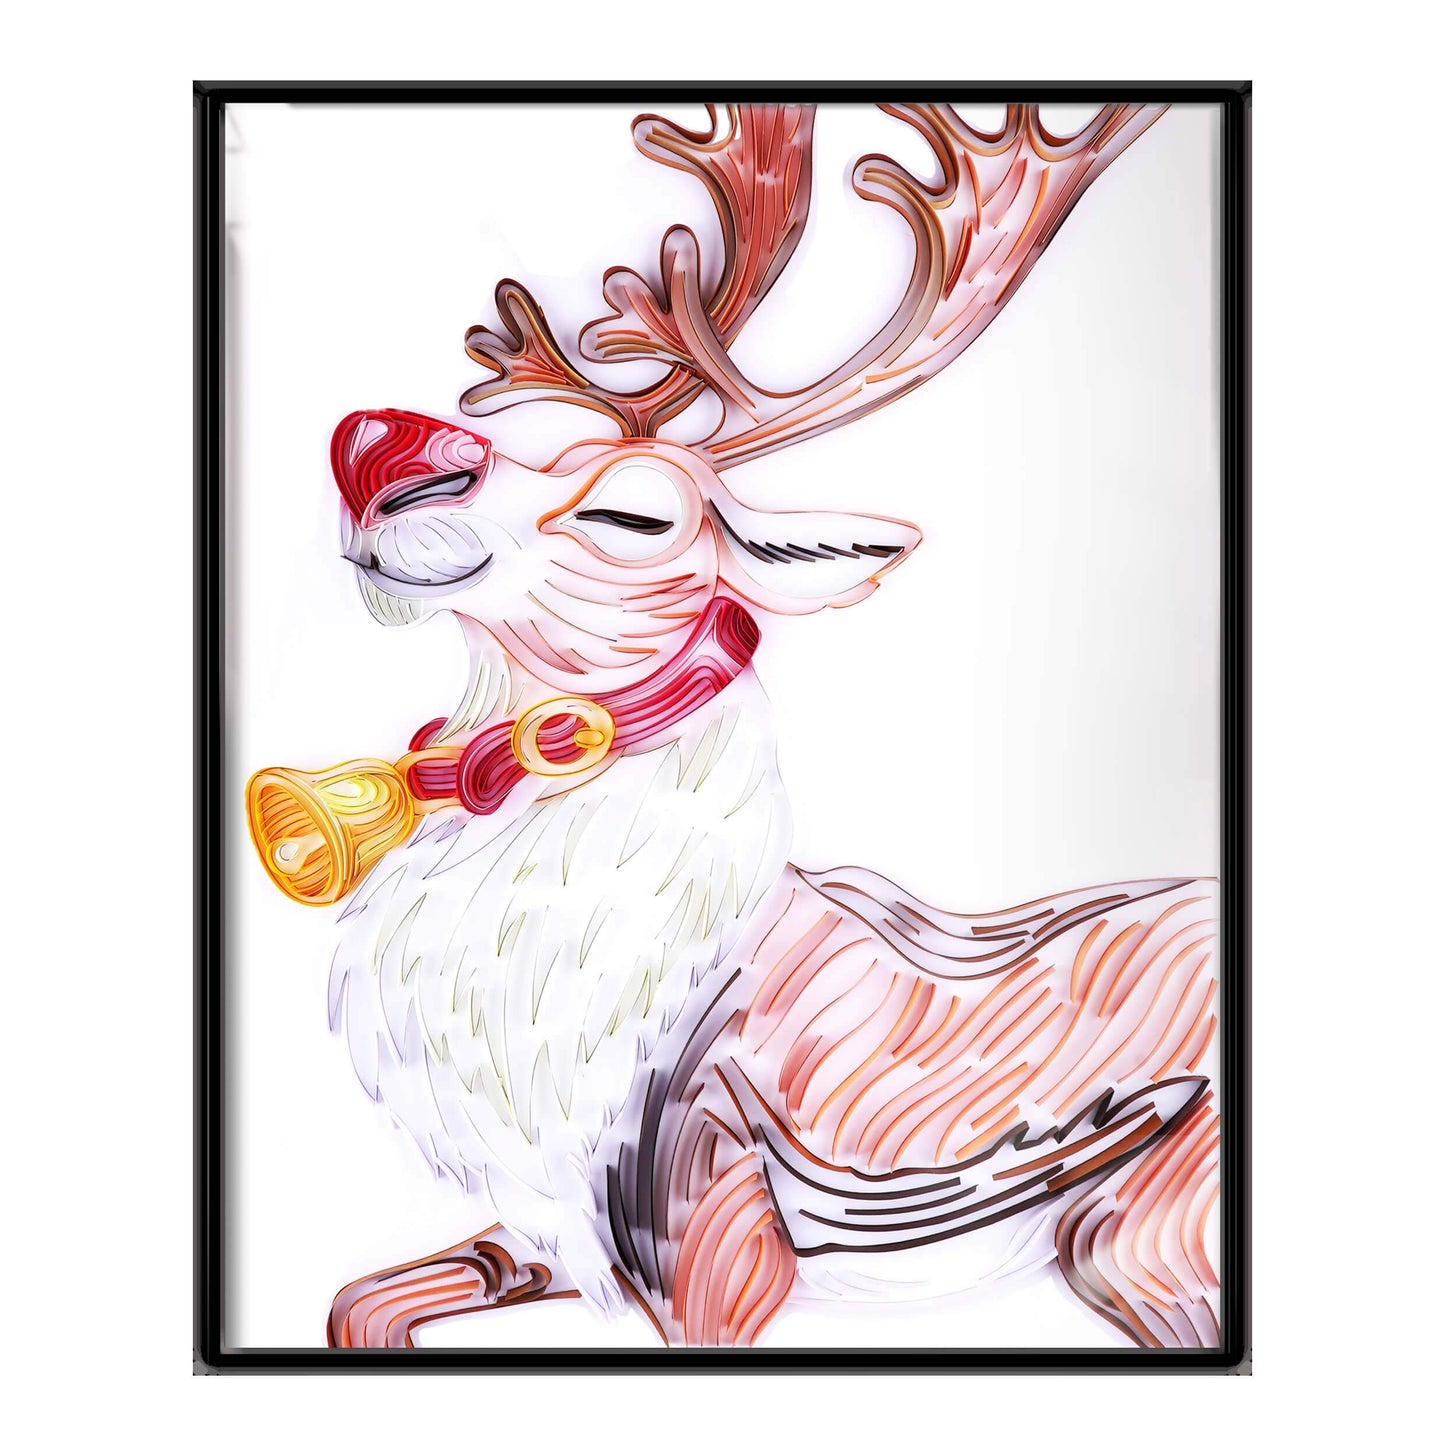 Kit de pintura de filigrana de papel - Alce navideño ( 16*20inch )